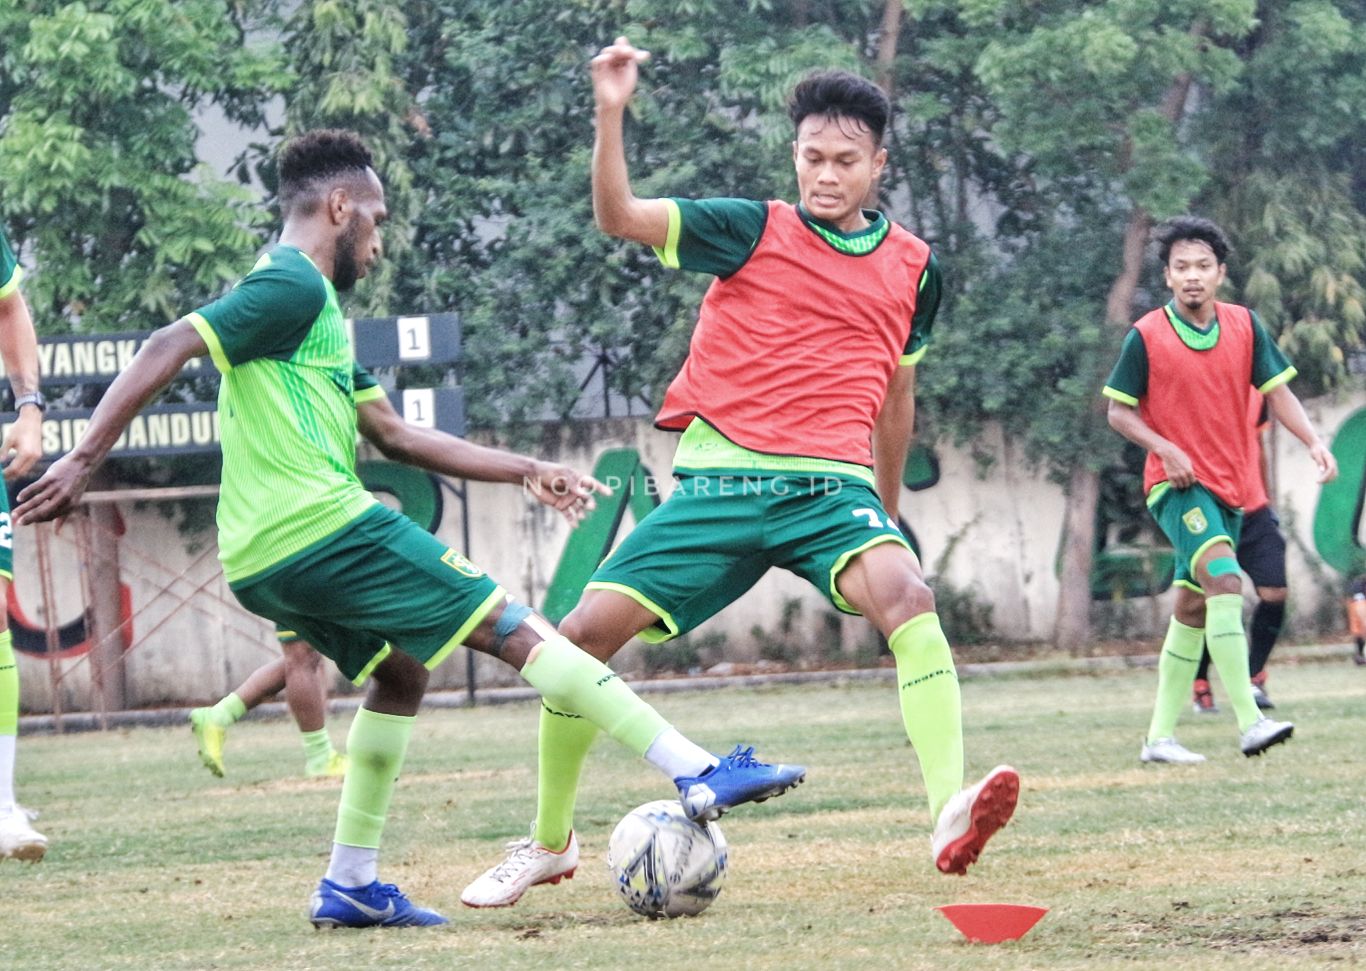 Pemain muda Persebaya jebolan Persebaya U-20, Koko Ari saat menjalani latihan bersama tim Persebaya senior. (Foto: Haris/Ngopibareng.id)